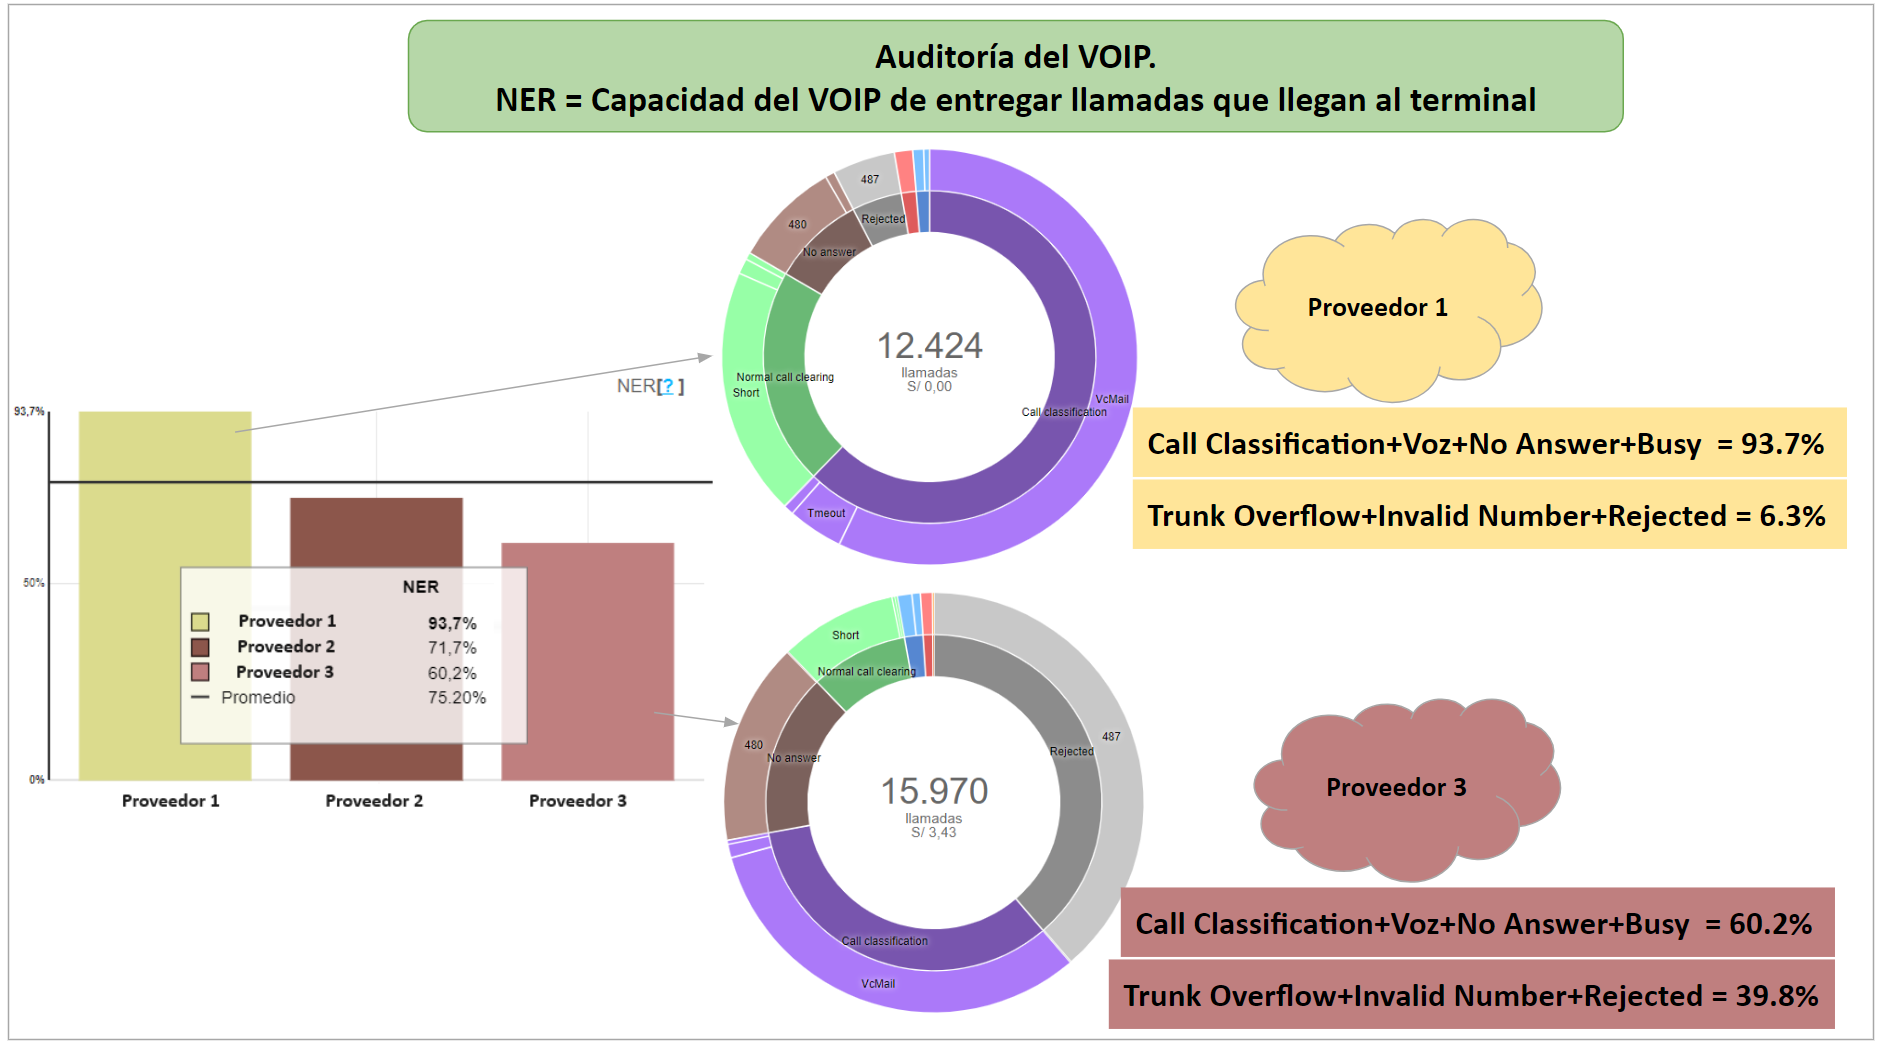 Auditoría VOIP en relación al NER